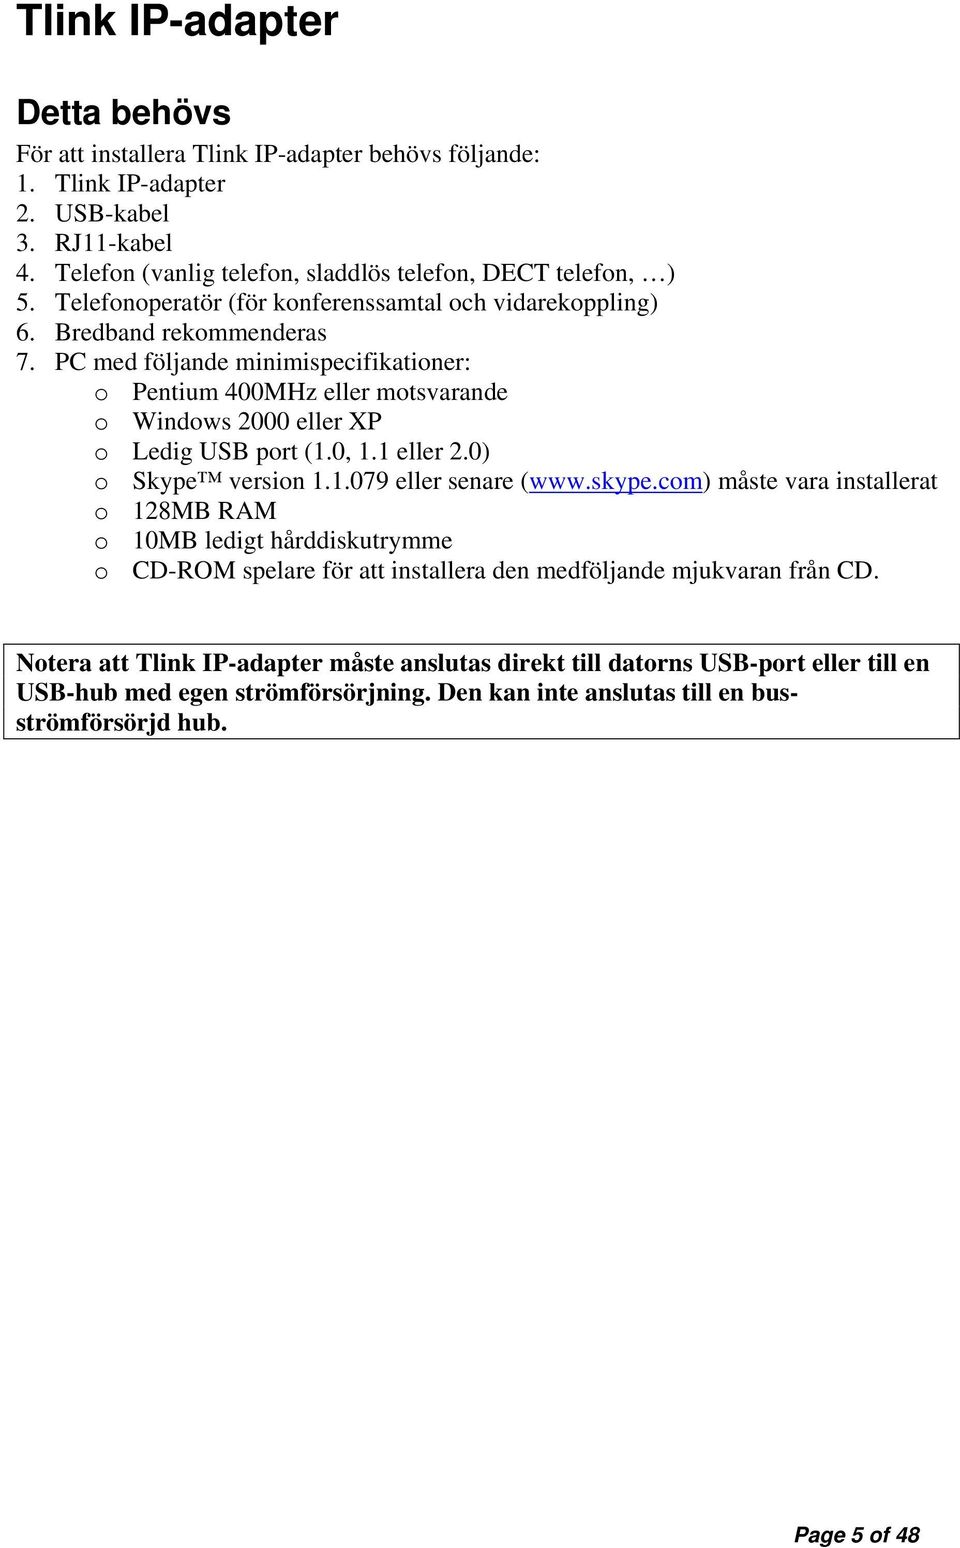 PC med följande minimispecifikationer: o Pentium 400MHz eller motsvarande o Windows 2000 eller XP o Ledig USB port (1.0, 1.1 eller 2.0) o Skype version 1.1.079 eller senare (www.skype.